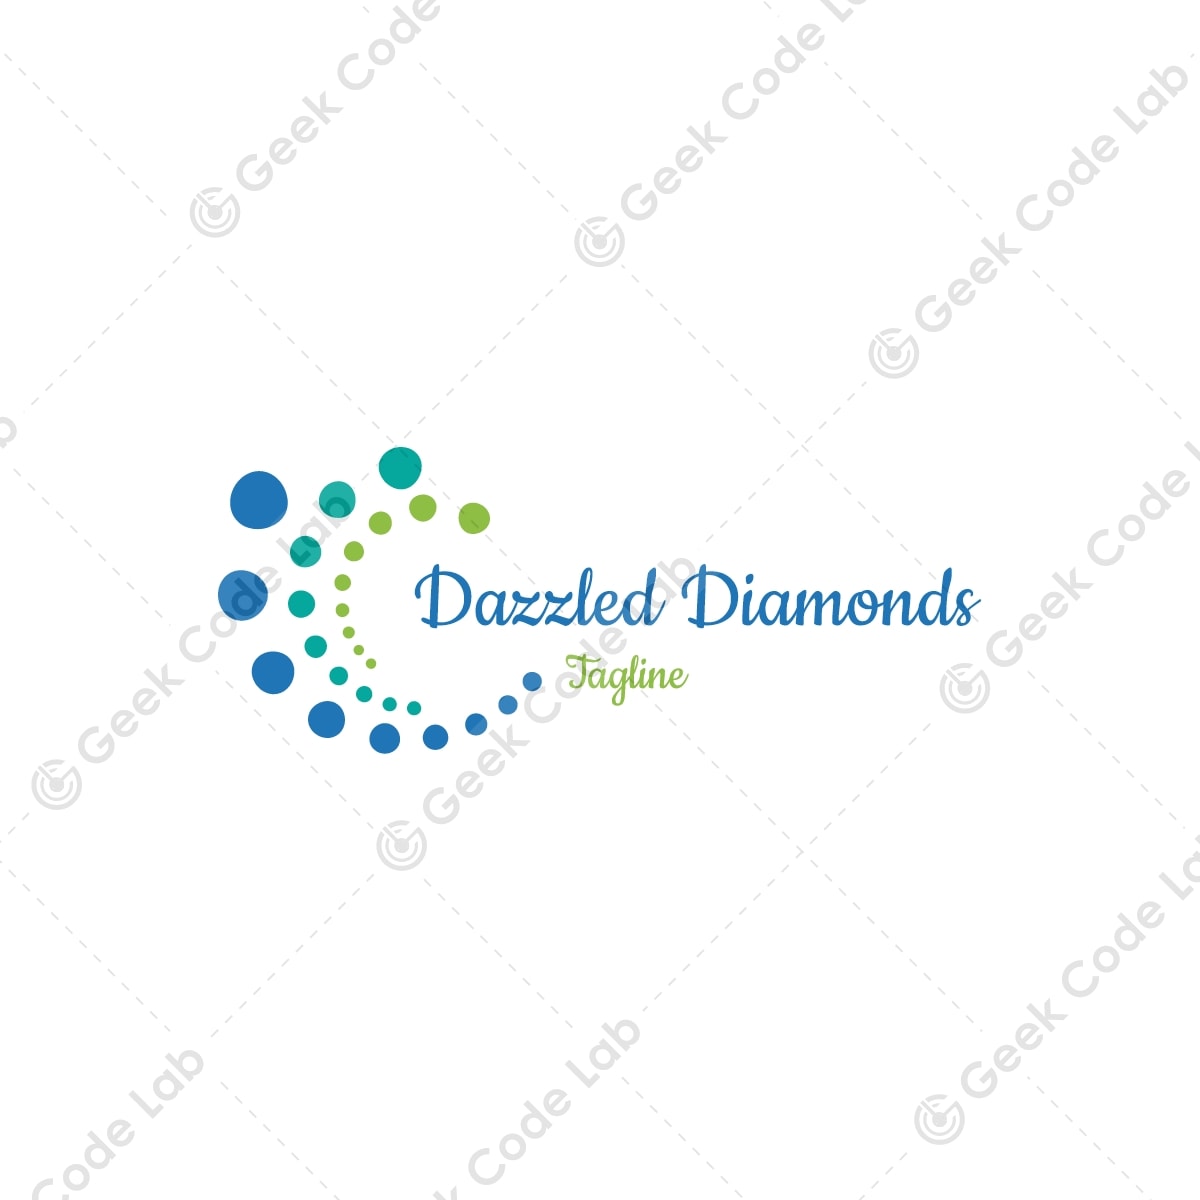 Dazzled Diamonds